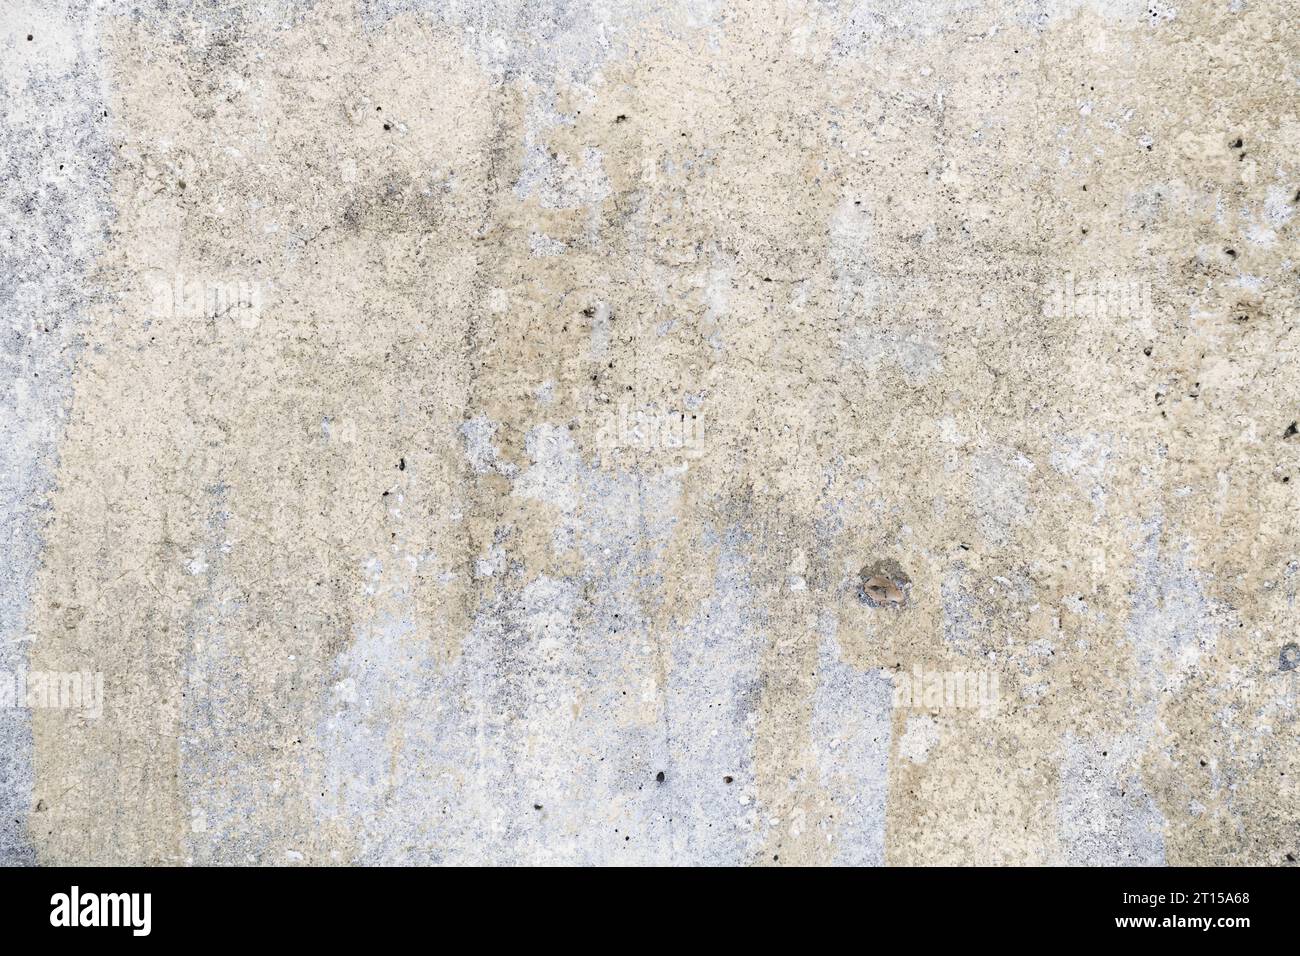 Schmutzige Wandstruktur. Grunge-Beton-Textur. Risse und Späne an der Wand... Stockfoto